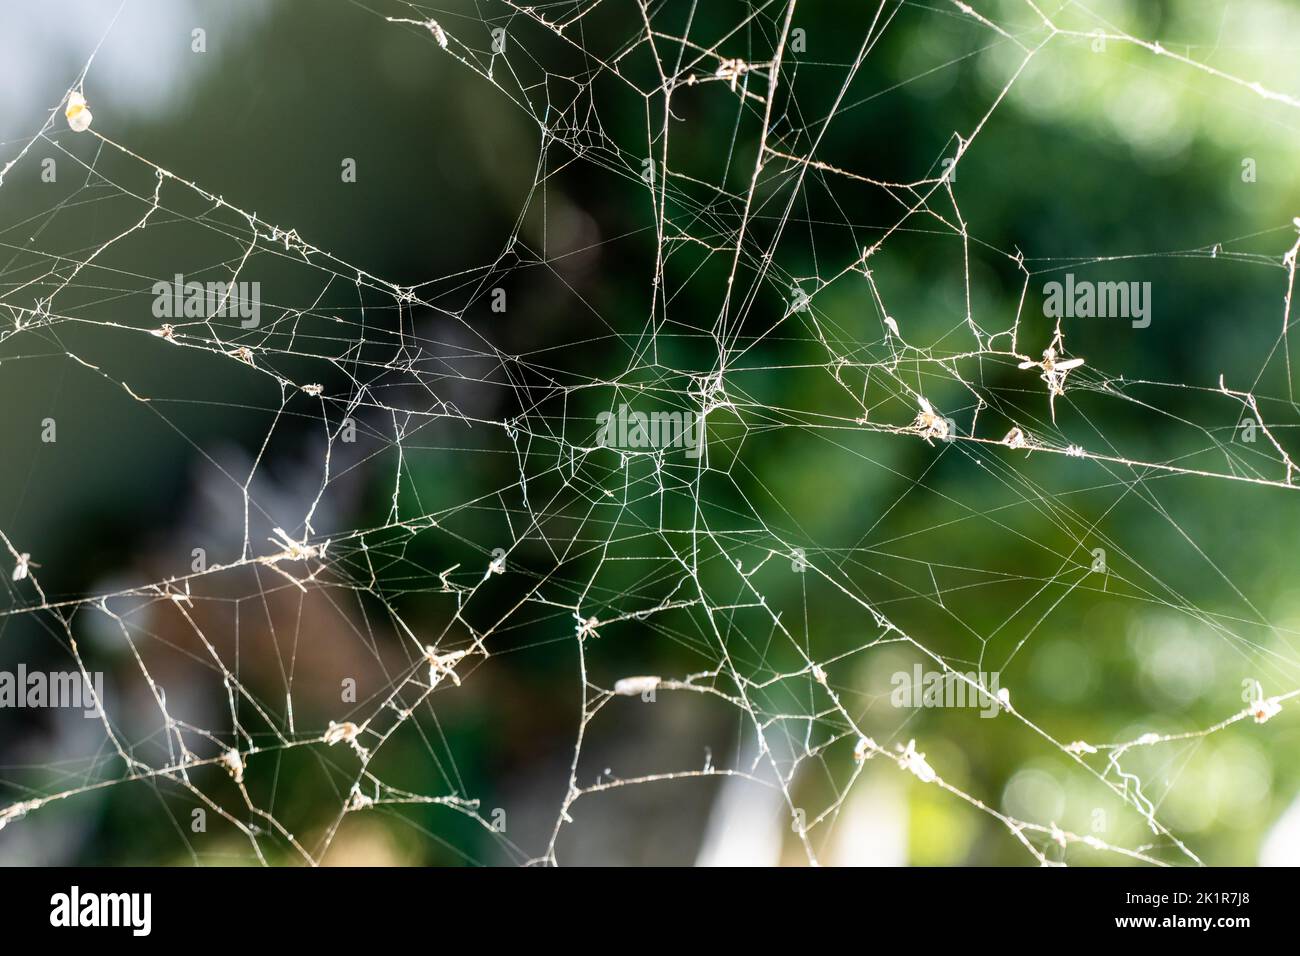 Une toile d'araignée soyeuse devant une vue floue de la forêt tropicale. Concept de la nature magnifique. Photo de haute qualité Banque D'Images